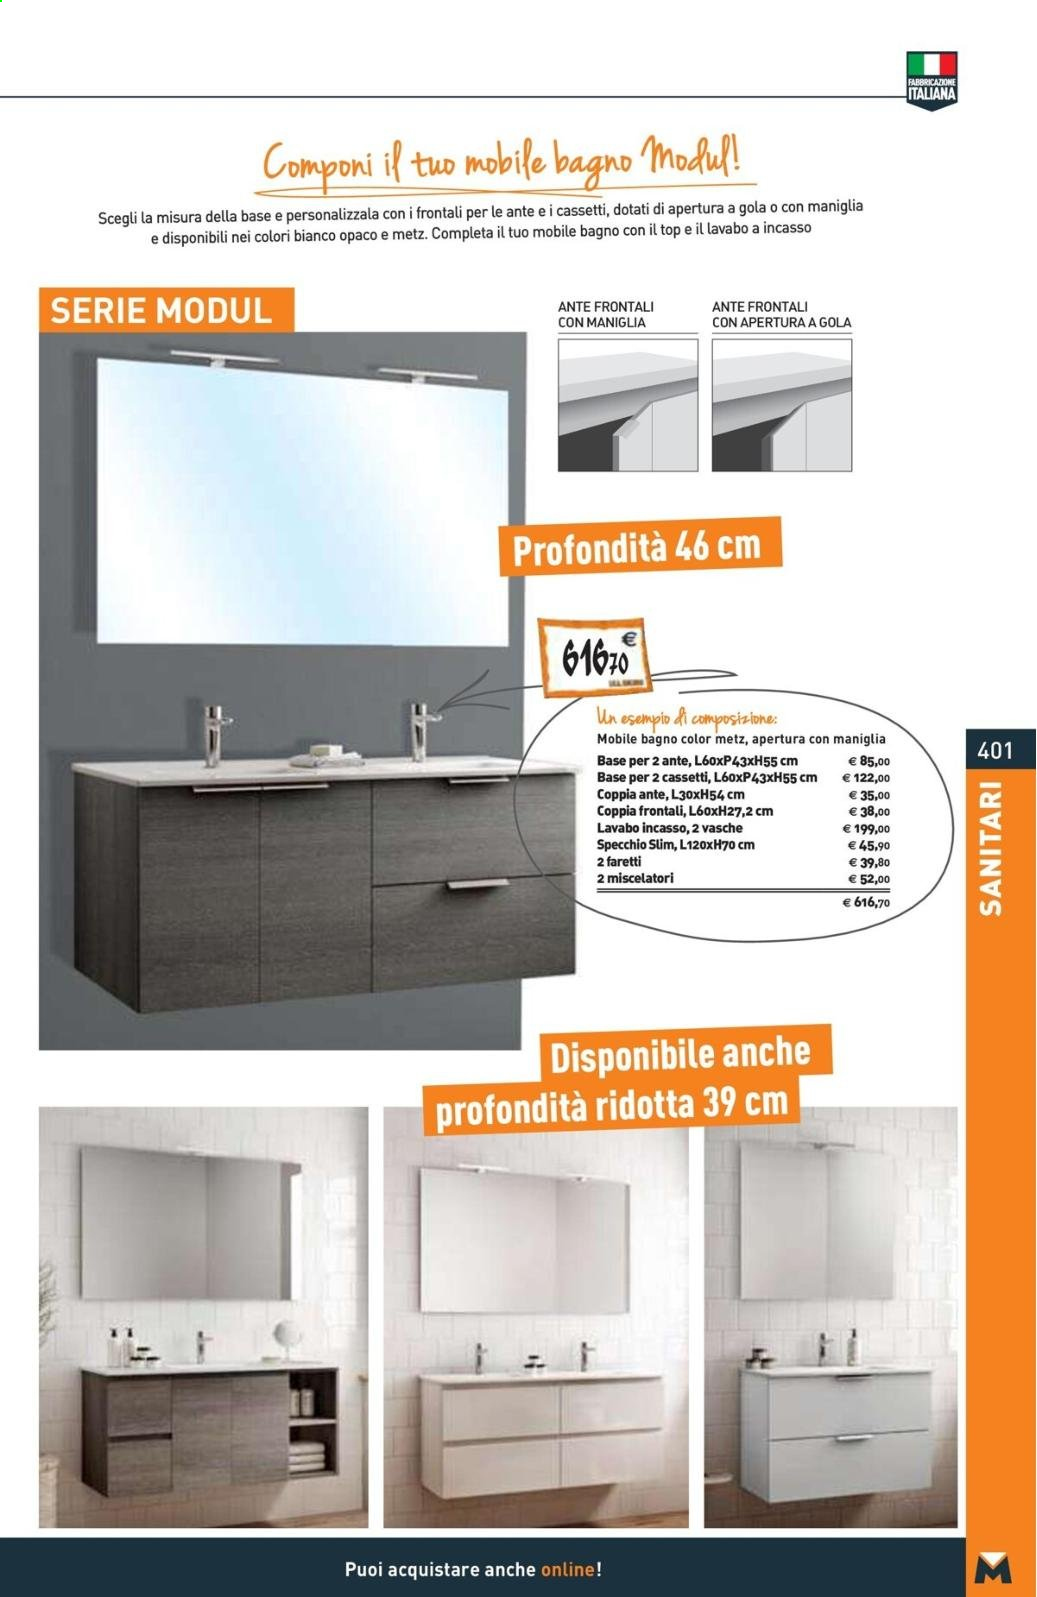 Volantino Bricoman - Prodotti in offerta - mobile da bagno. Pagina 401.